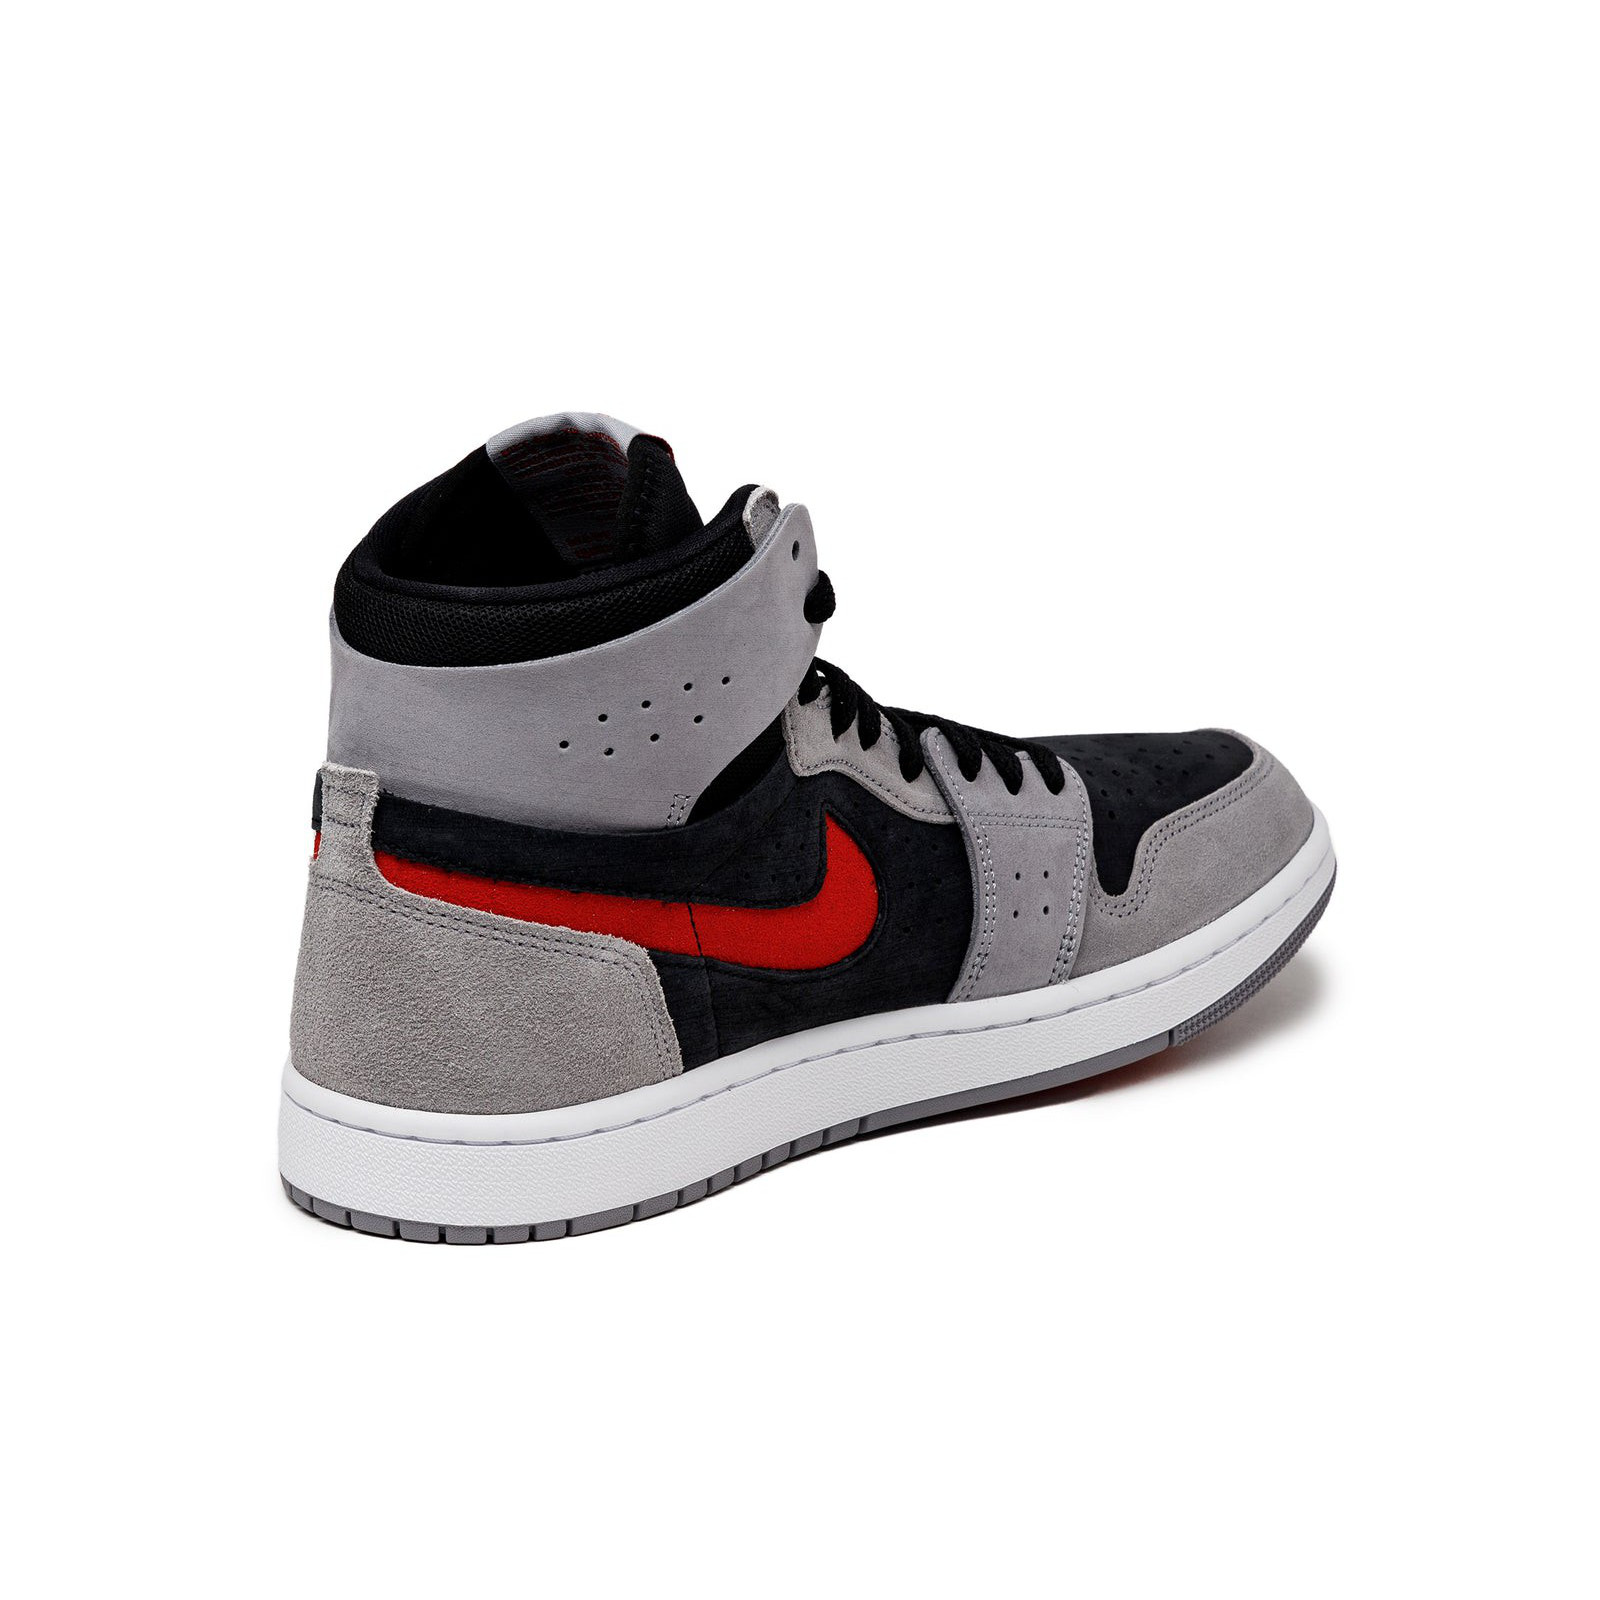 Air Jordan 1 High
Zoom Comfort 2
« Red Cement »